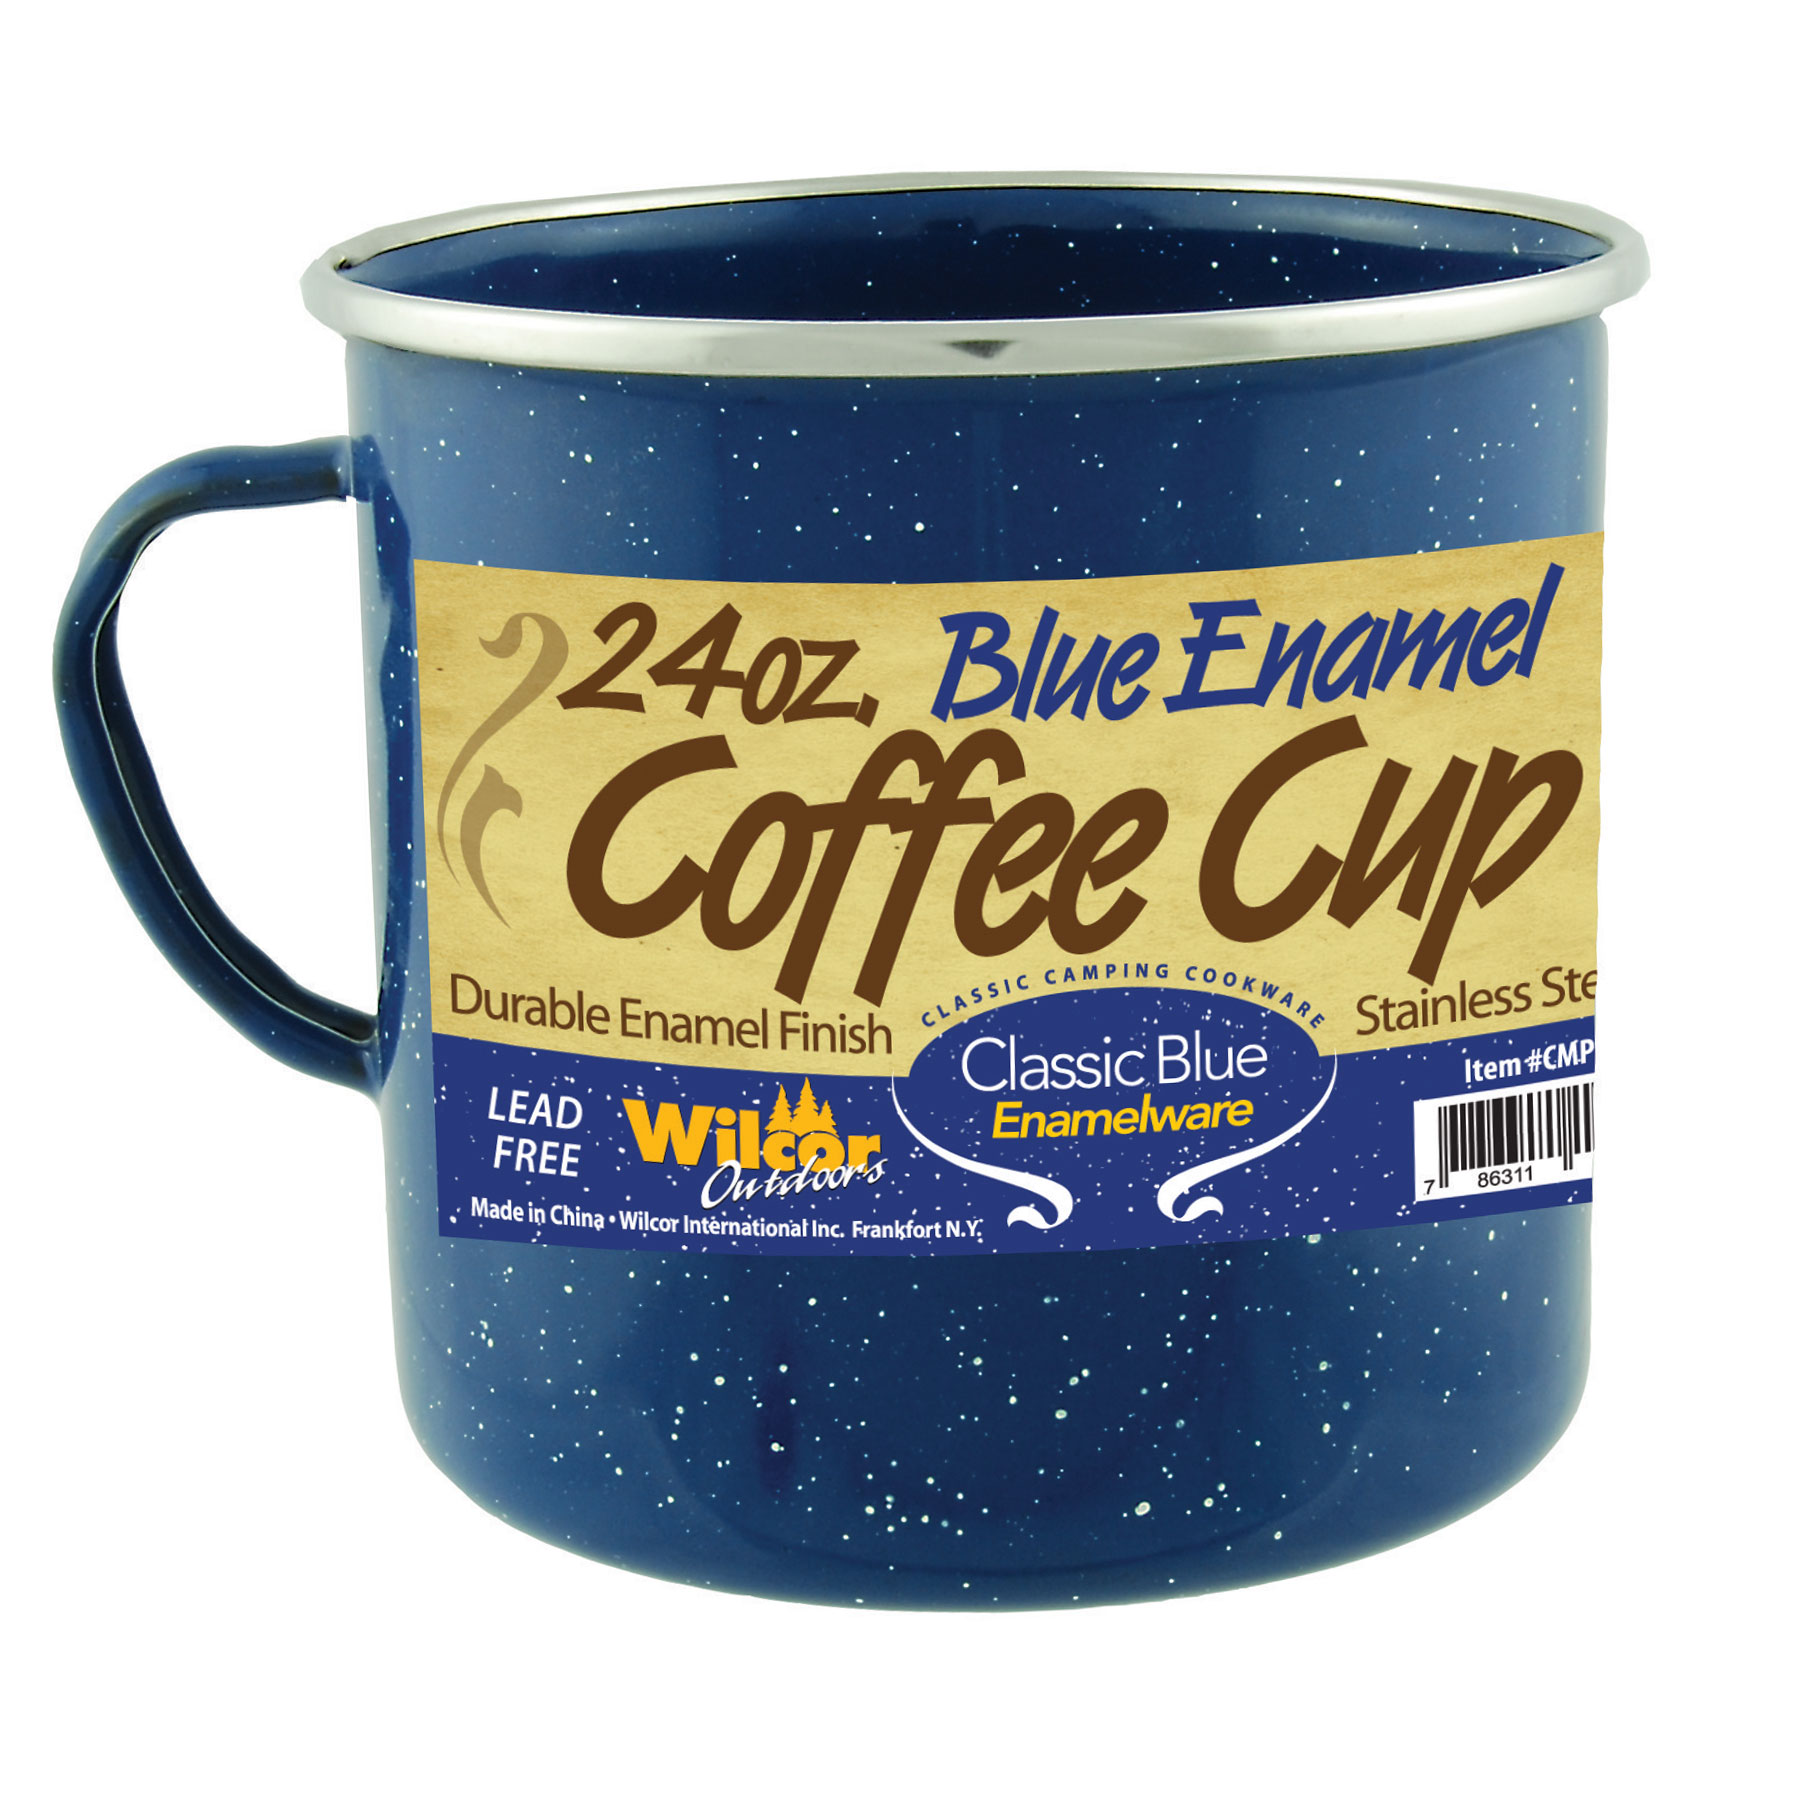 COFFEE CUP BLUE ENAMEL 24oz